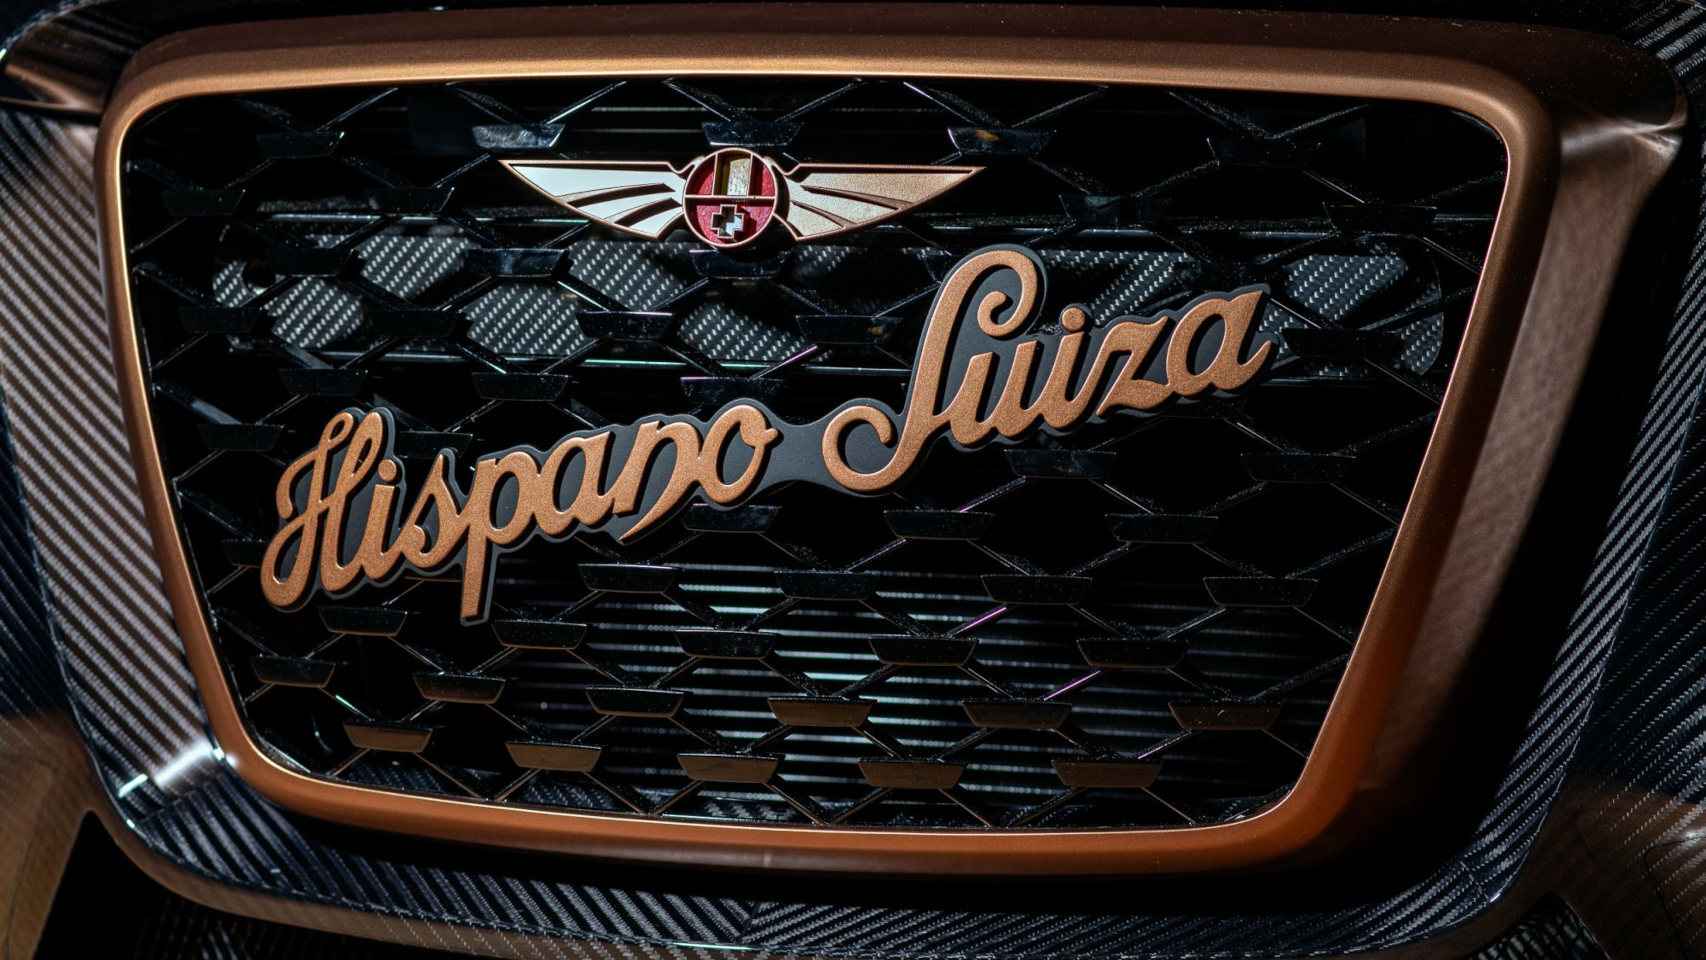 La parrilla frontal está dominada por el nombre de Hispano Suiza